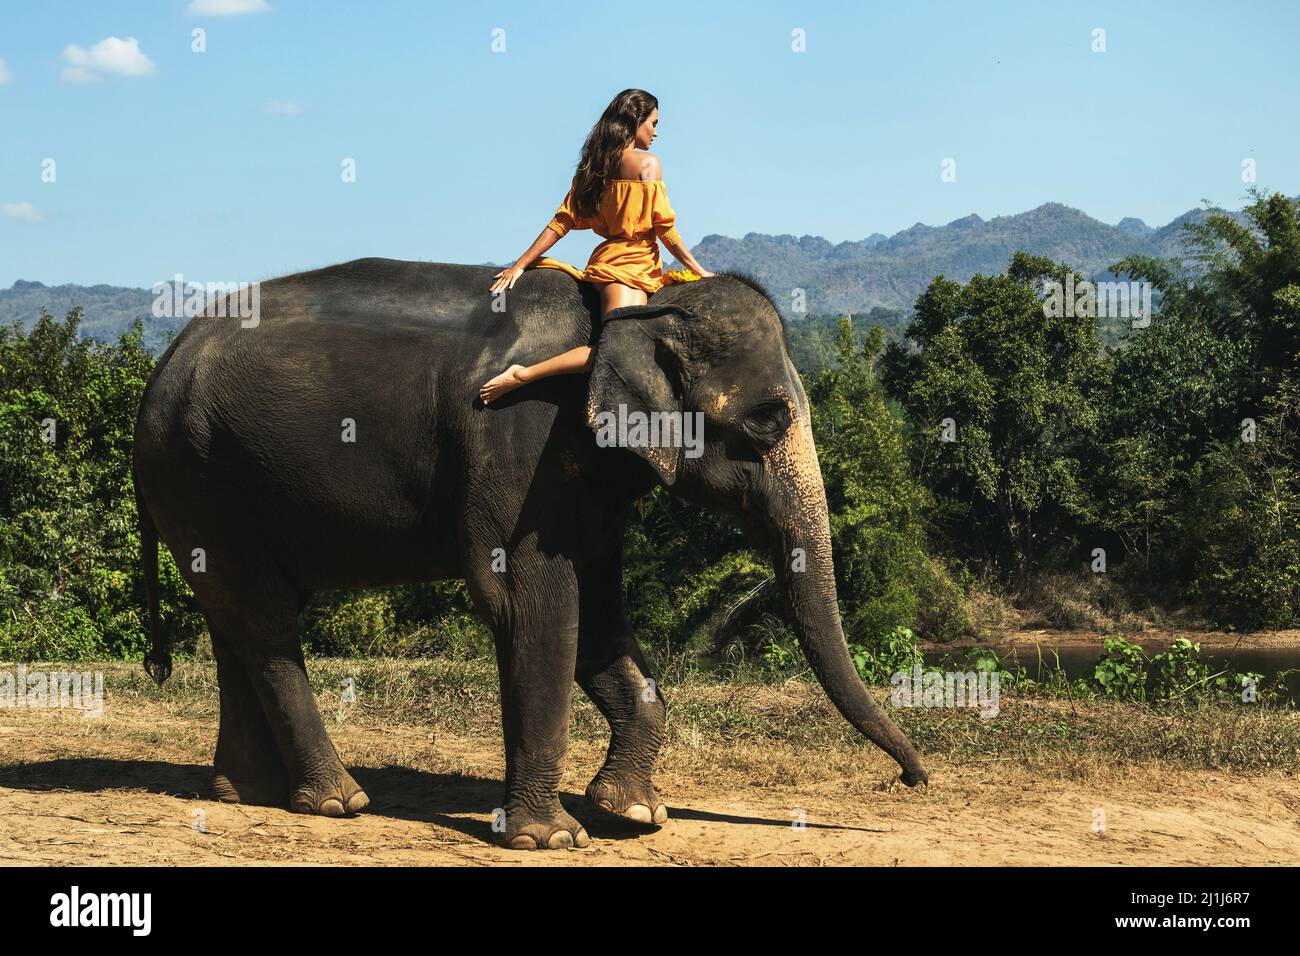 La donna che indossa un bel vestito arancione sta cavalcando l'elefante  Foto stock - Alamy